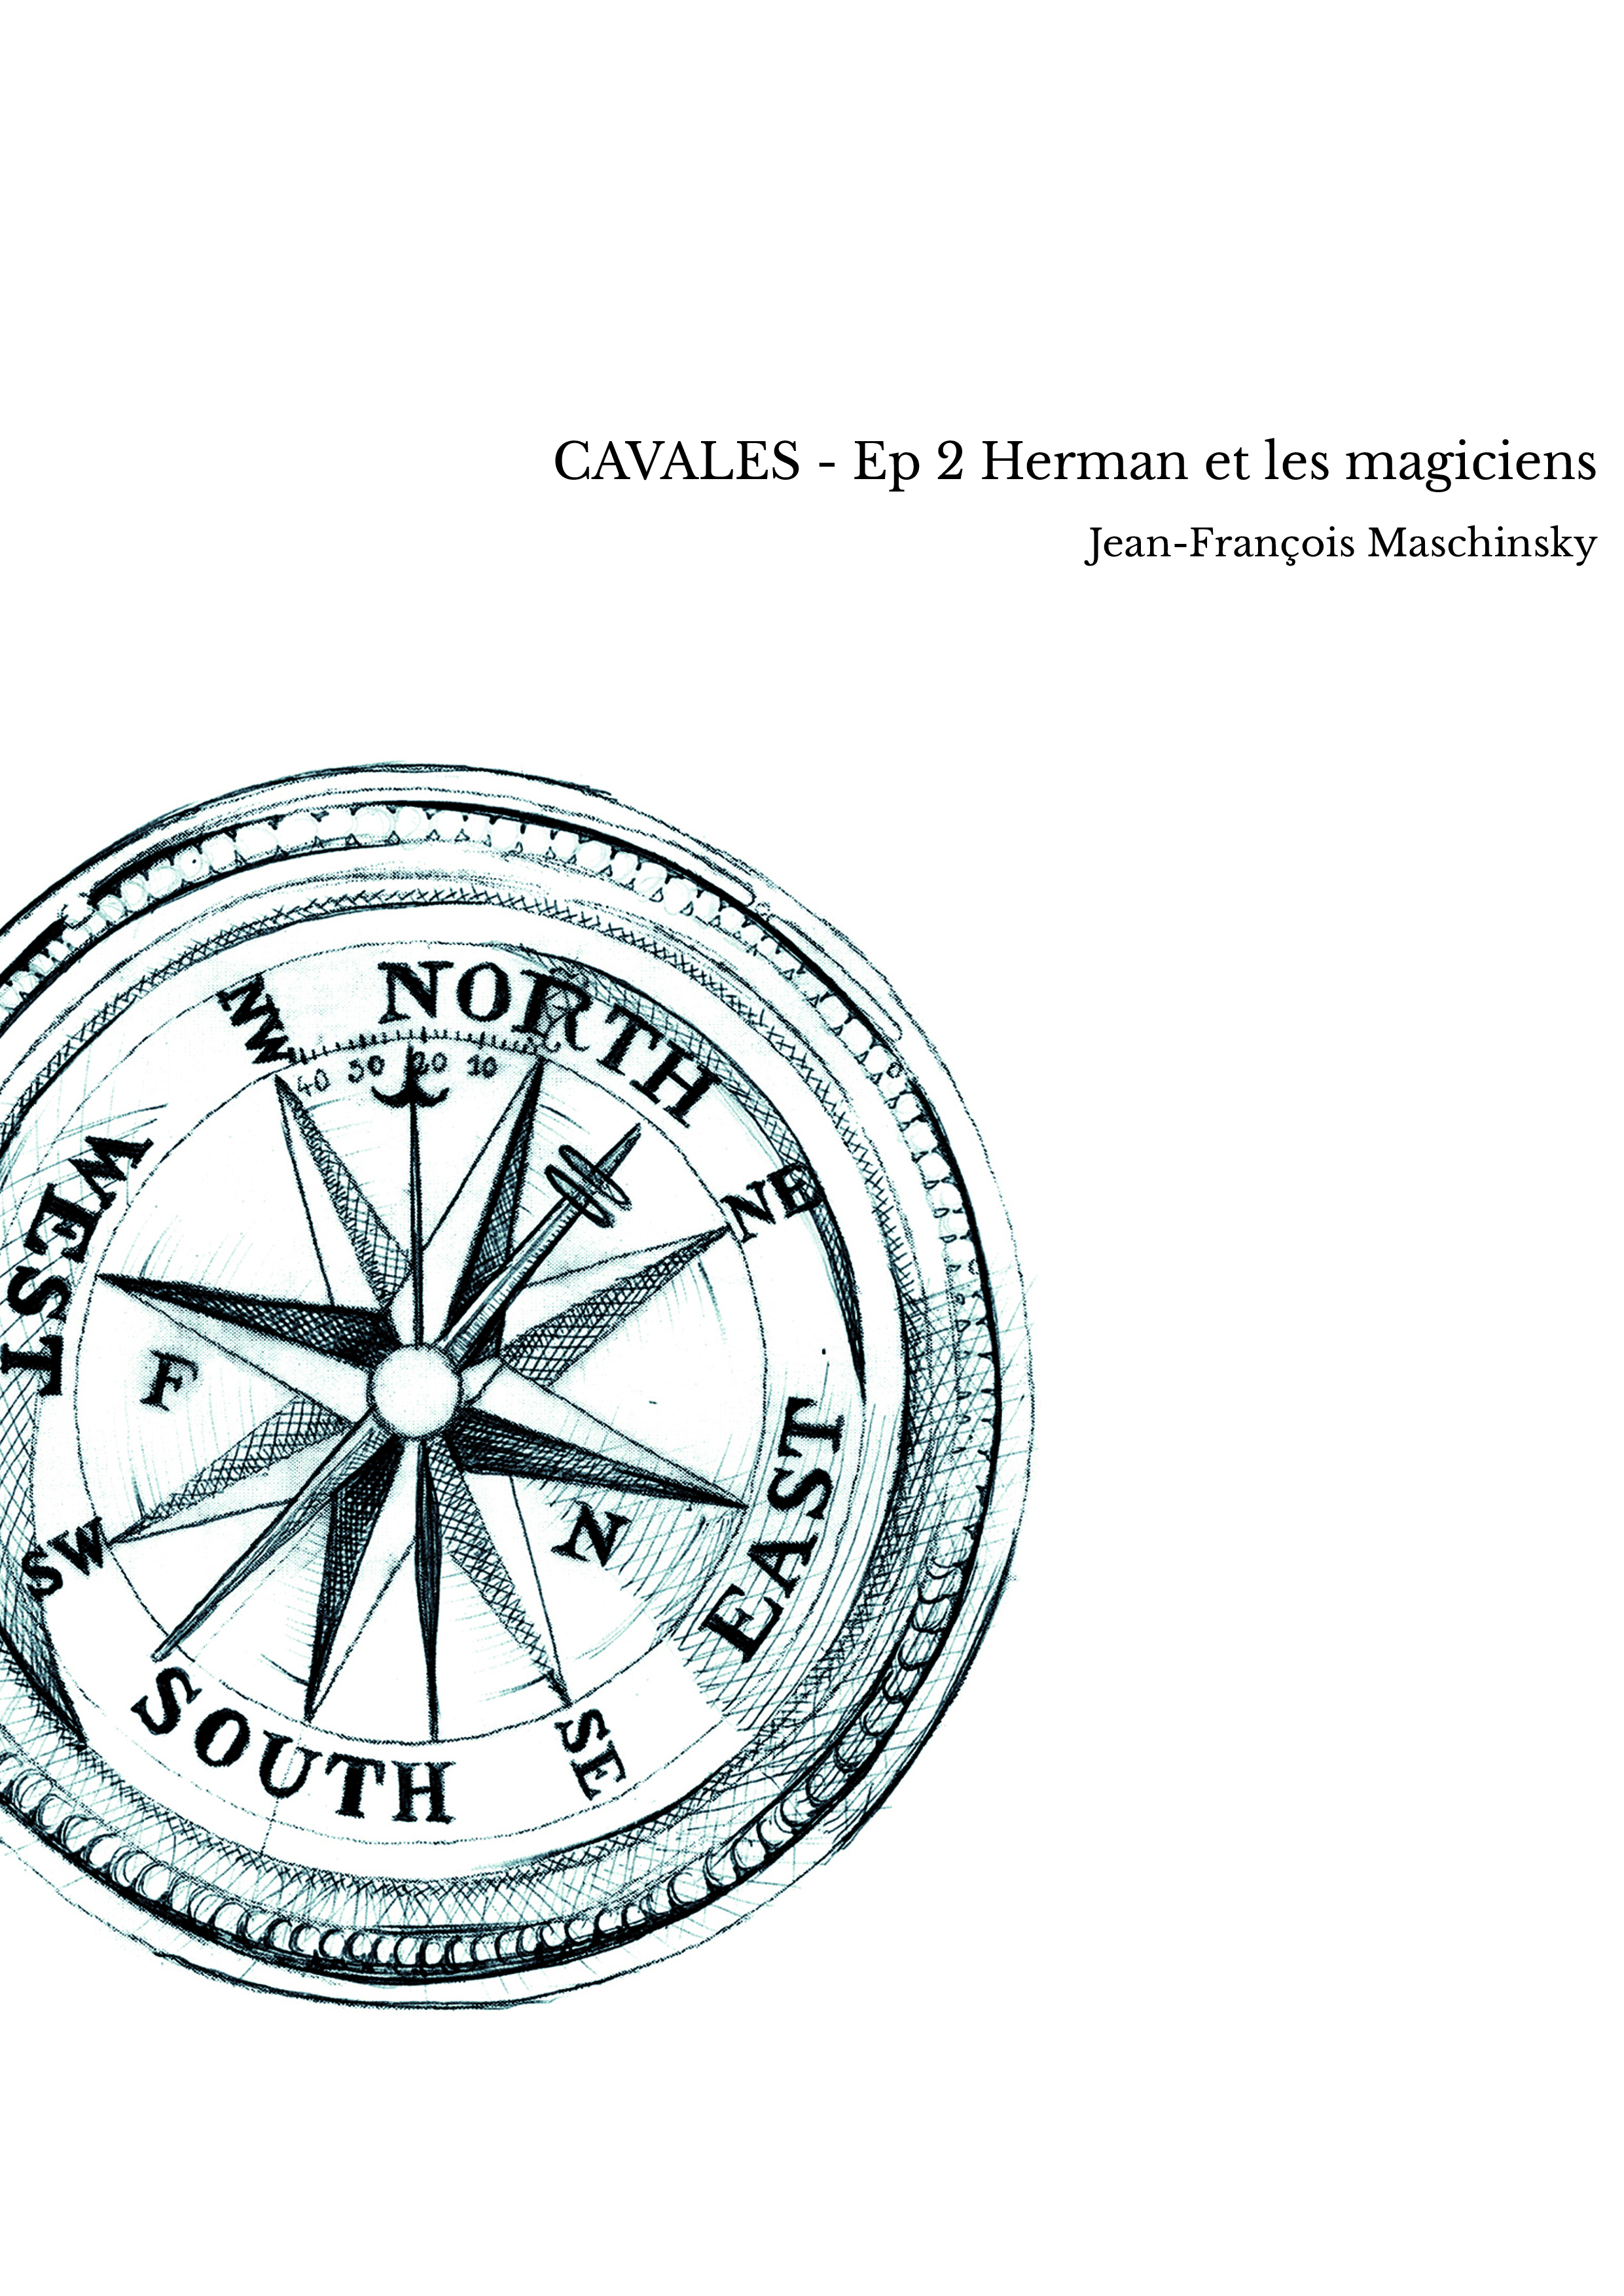 CAVALES - Ep 2 Herman et les magiciens